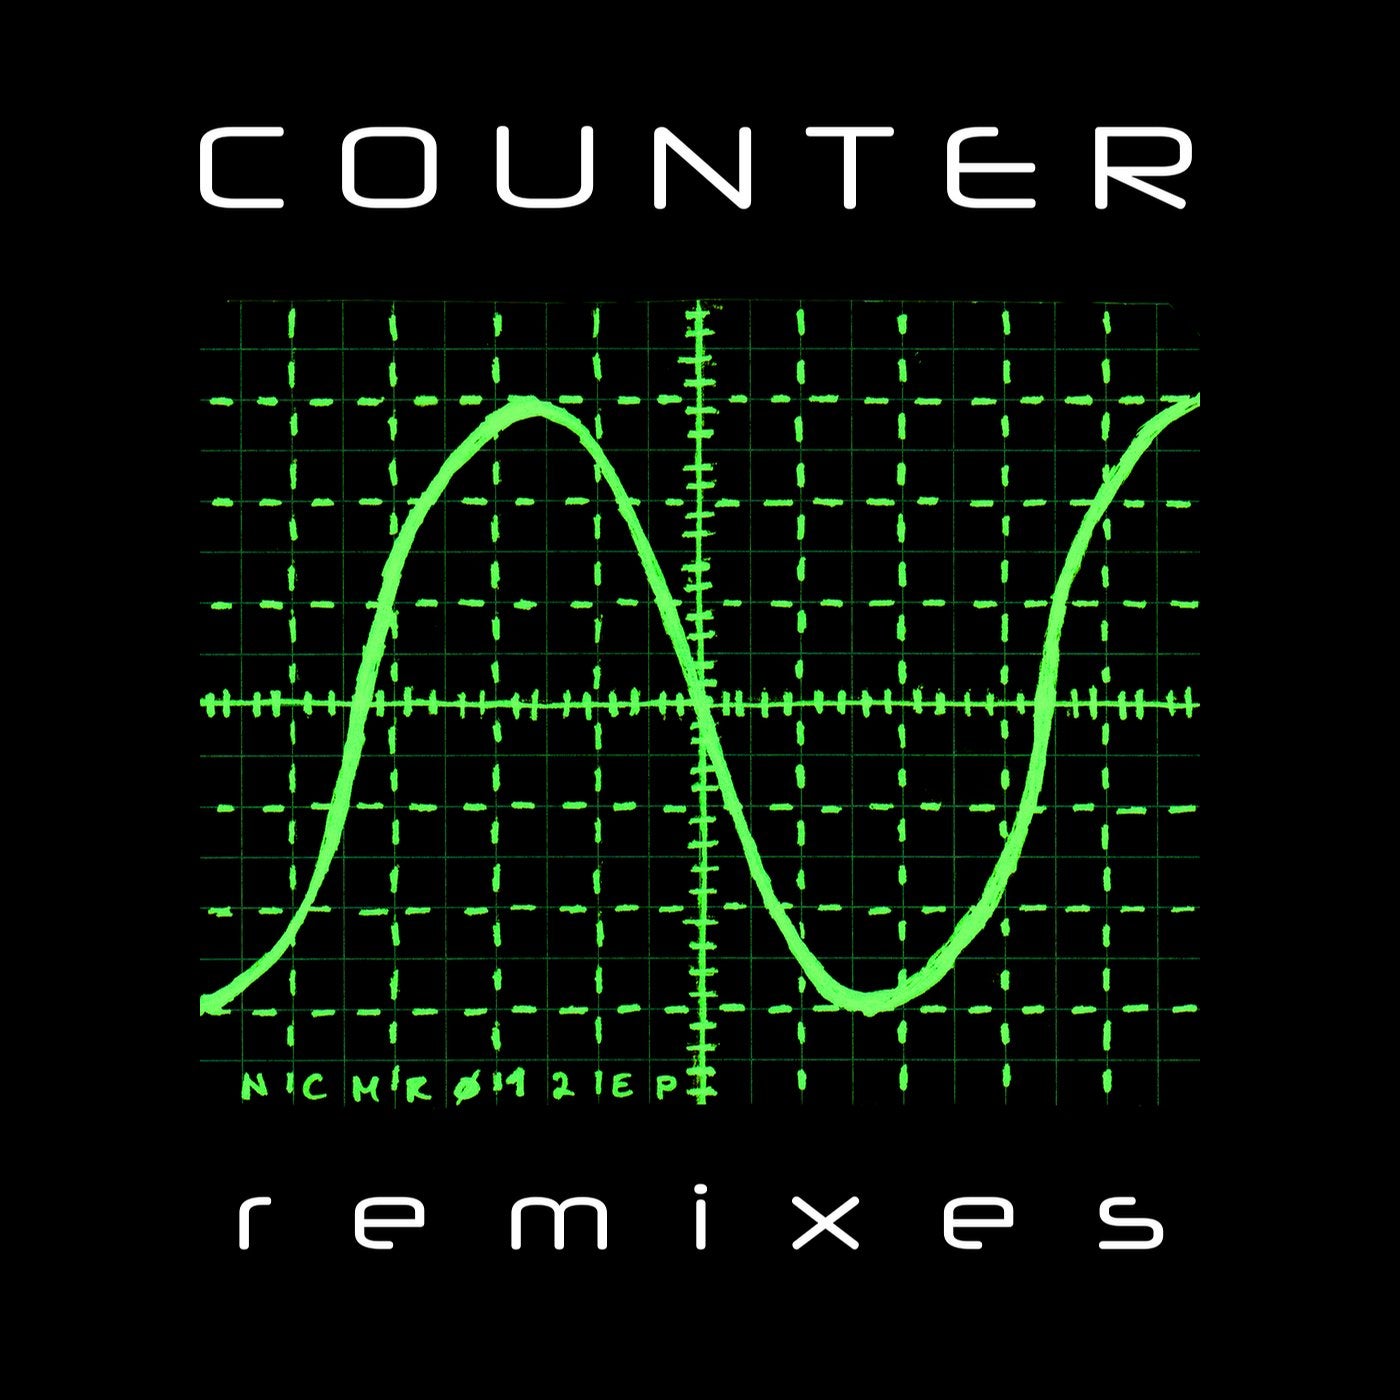 Counter - Remixes